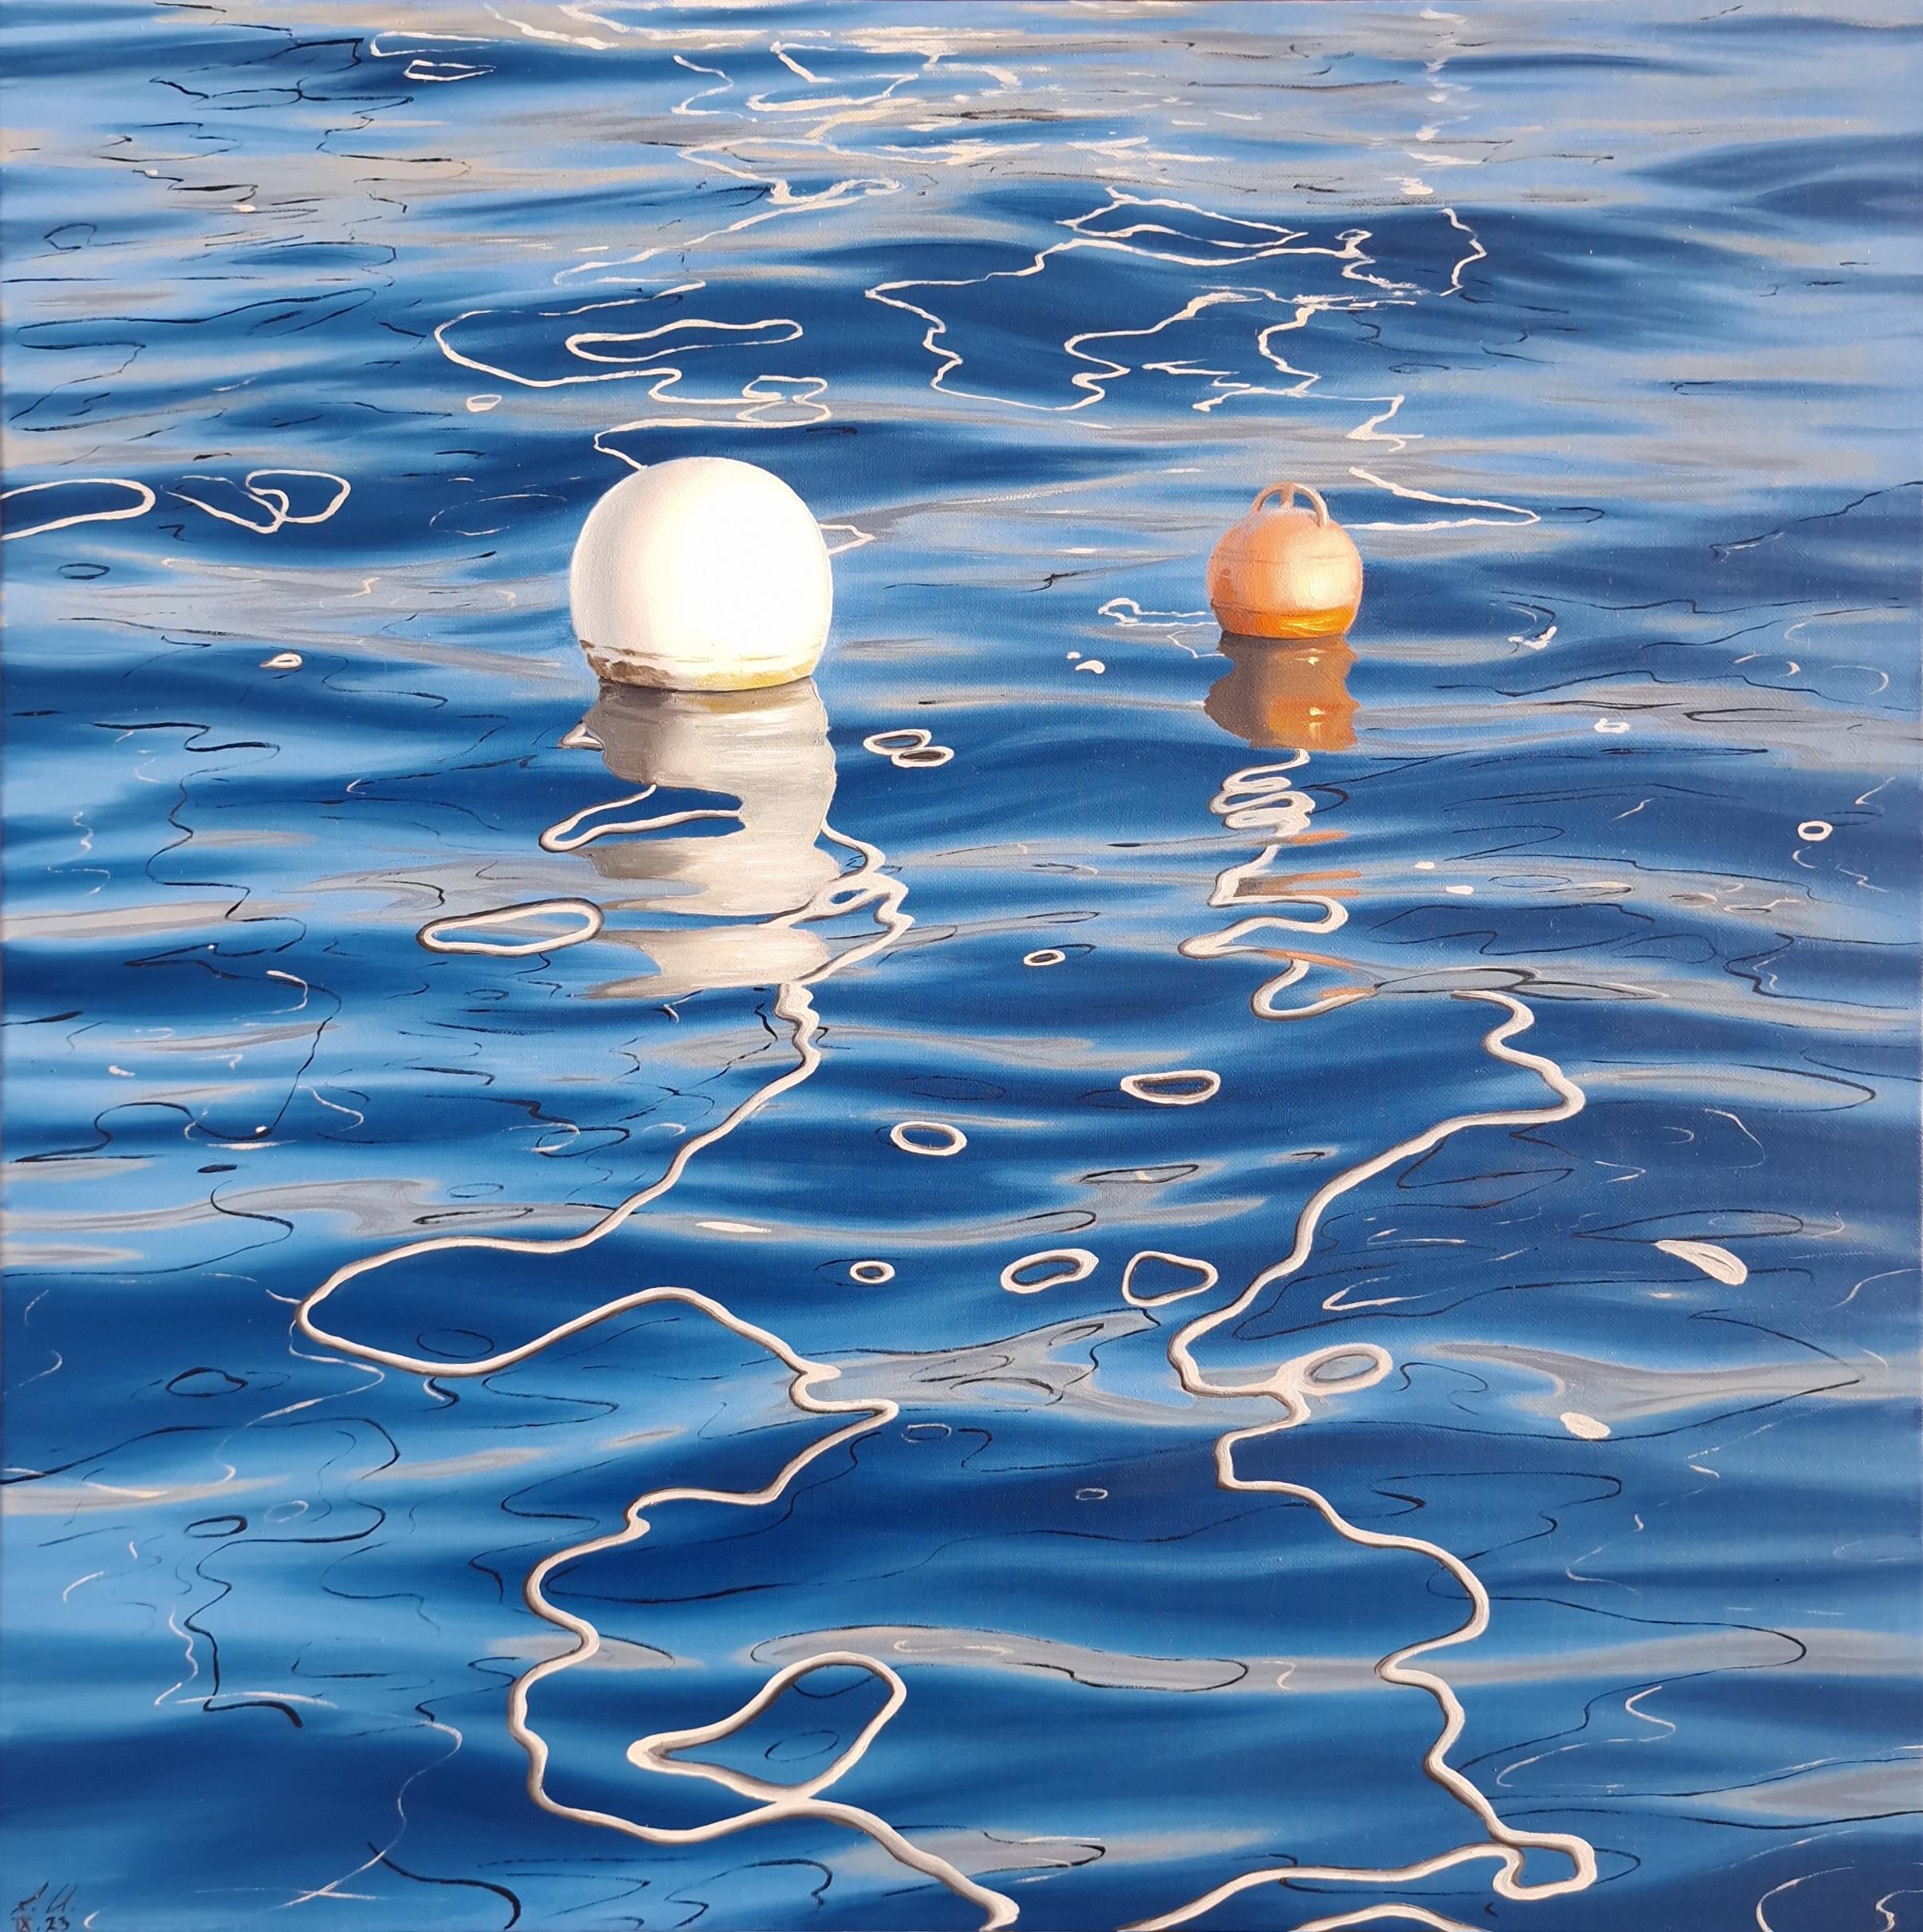 L'heure dorée au port - réalisme original - paysage marin - nature morte - peinture à l'huile - art